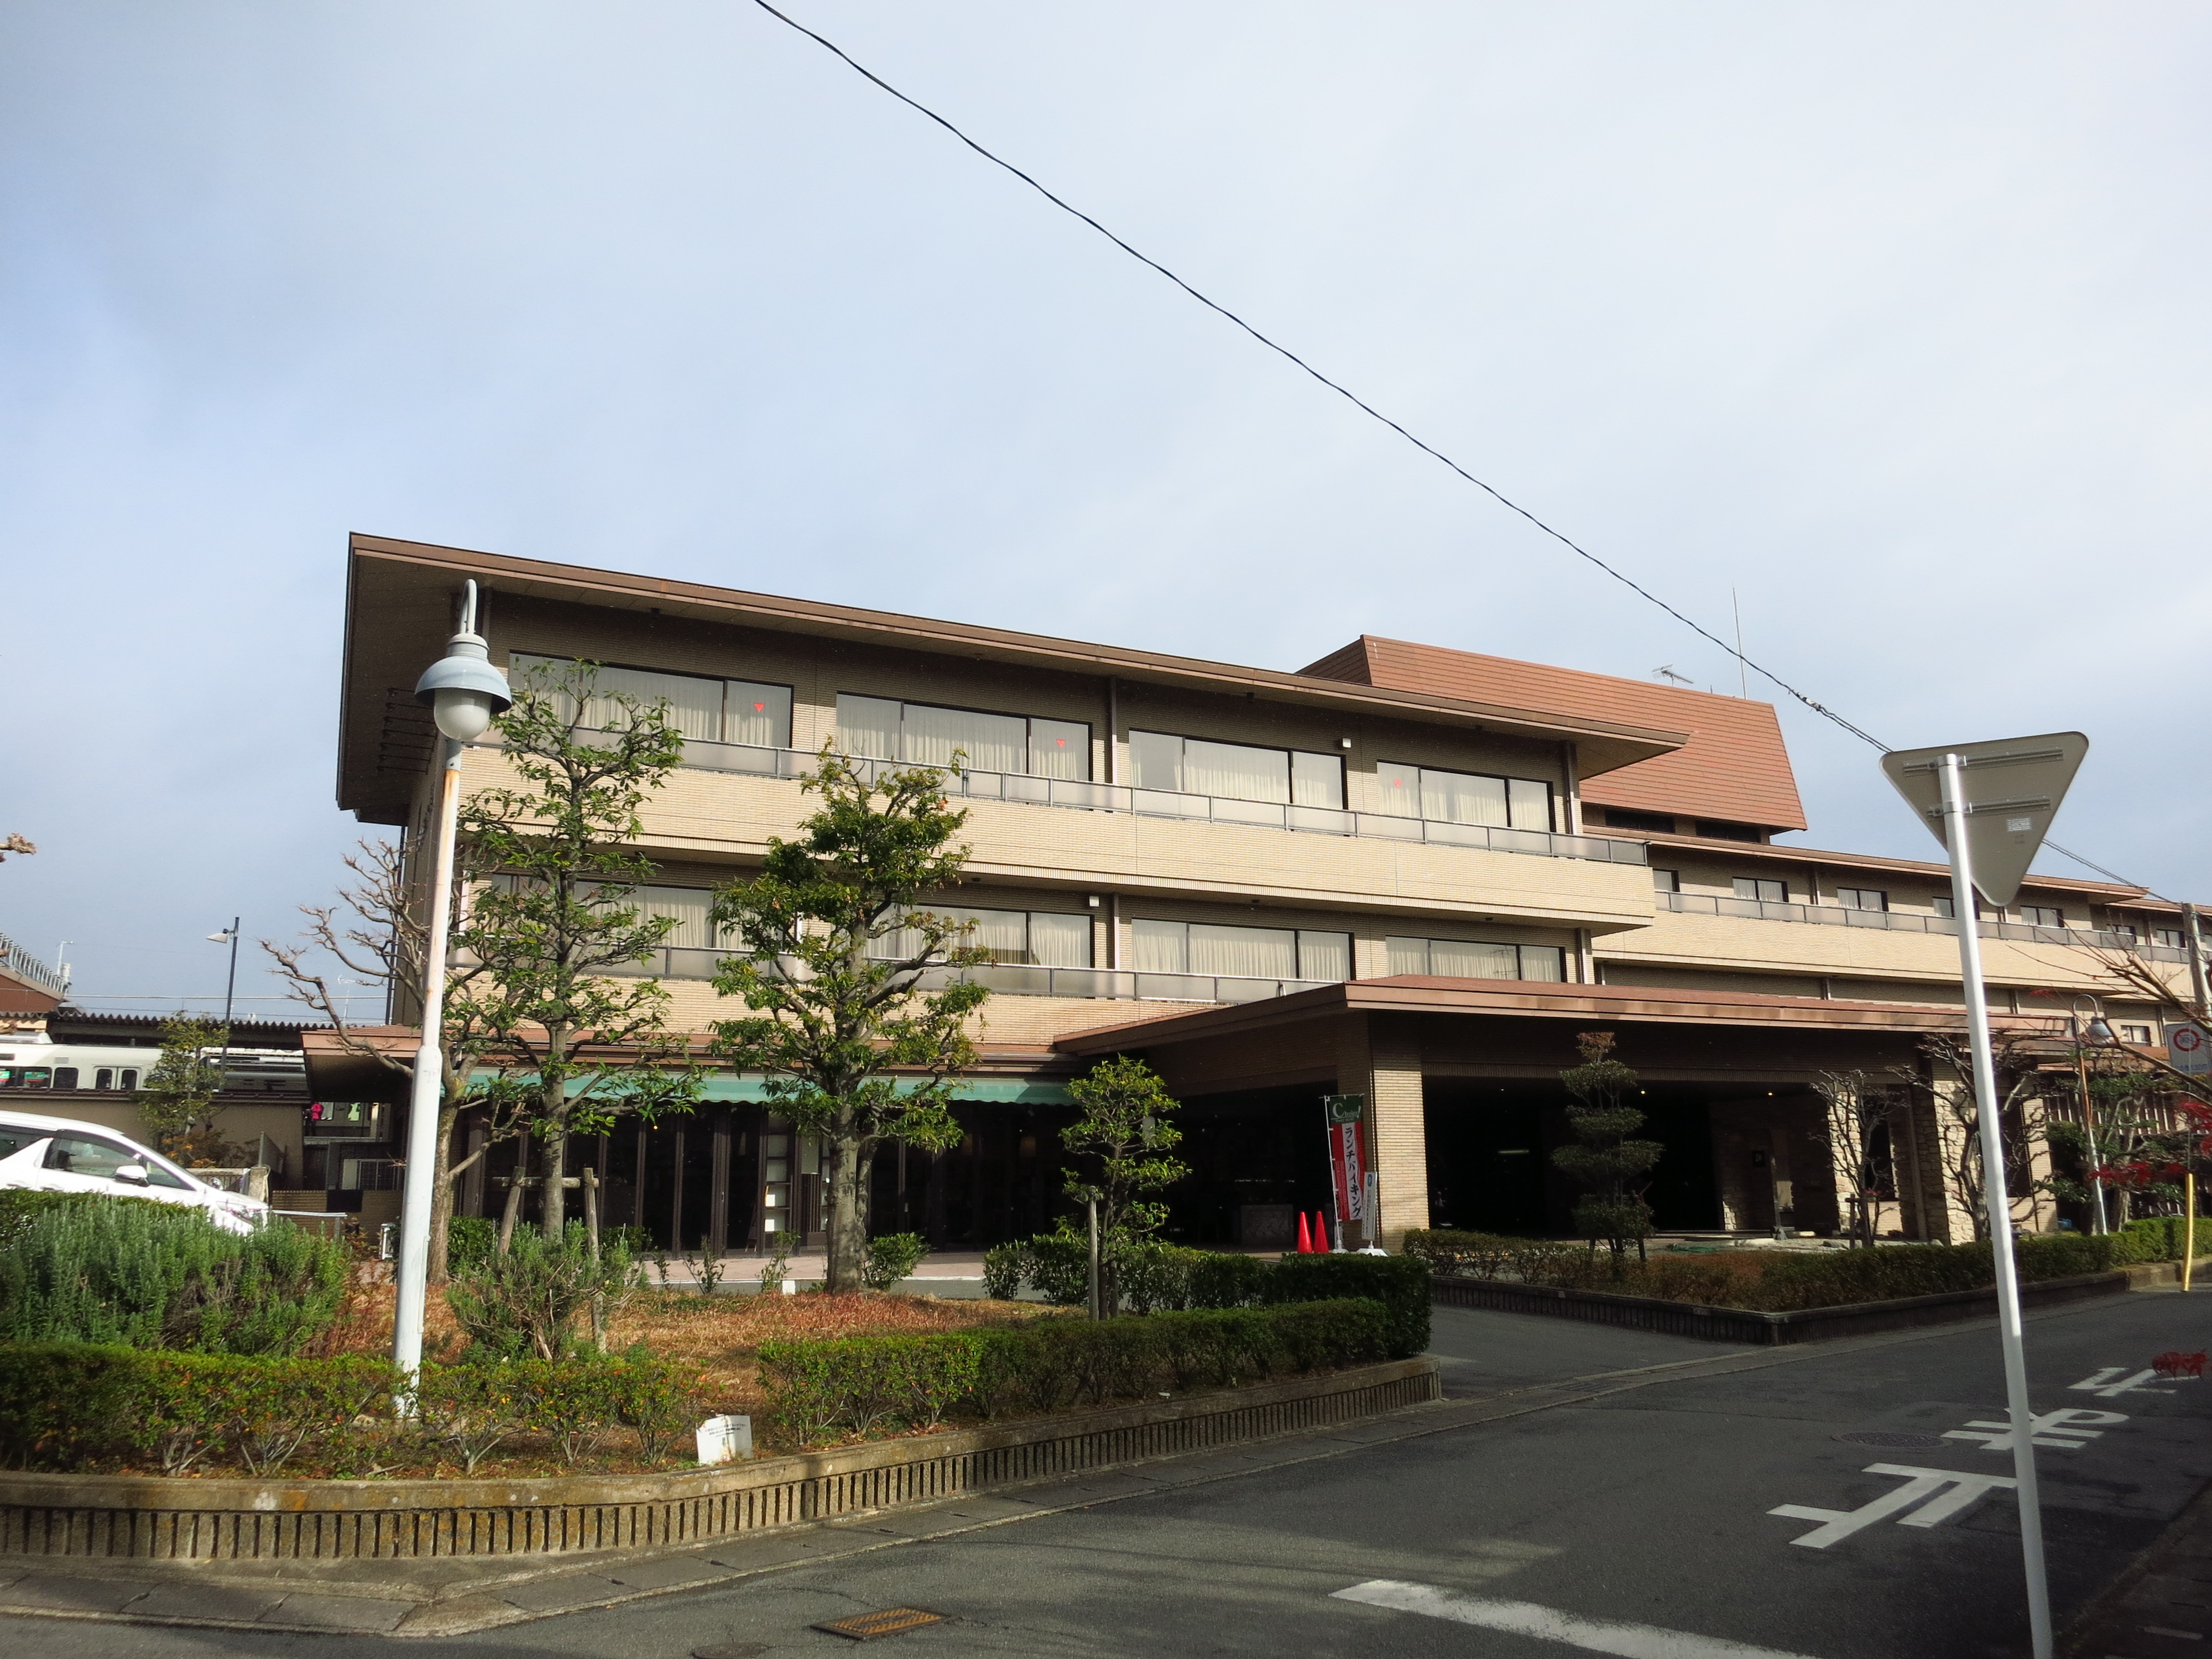 前日から泊まっていたJR嵯峨嵐山駅徒歩１分にある、「ホテルビナリオ嵯峨嵐山」から出発しました。